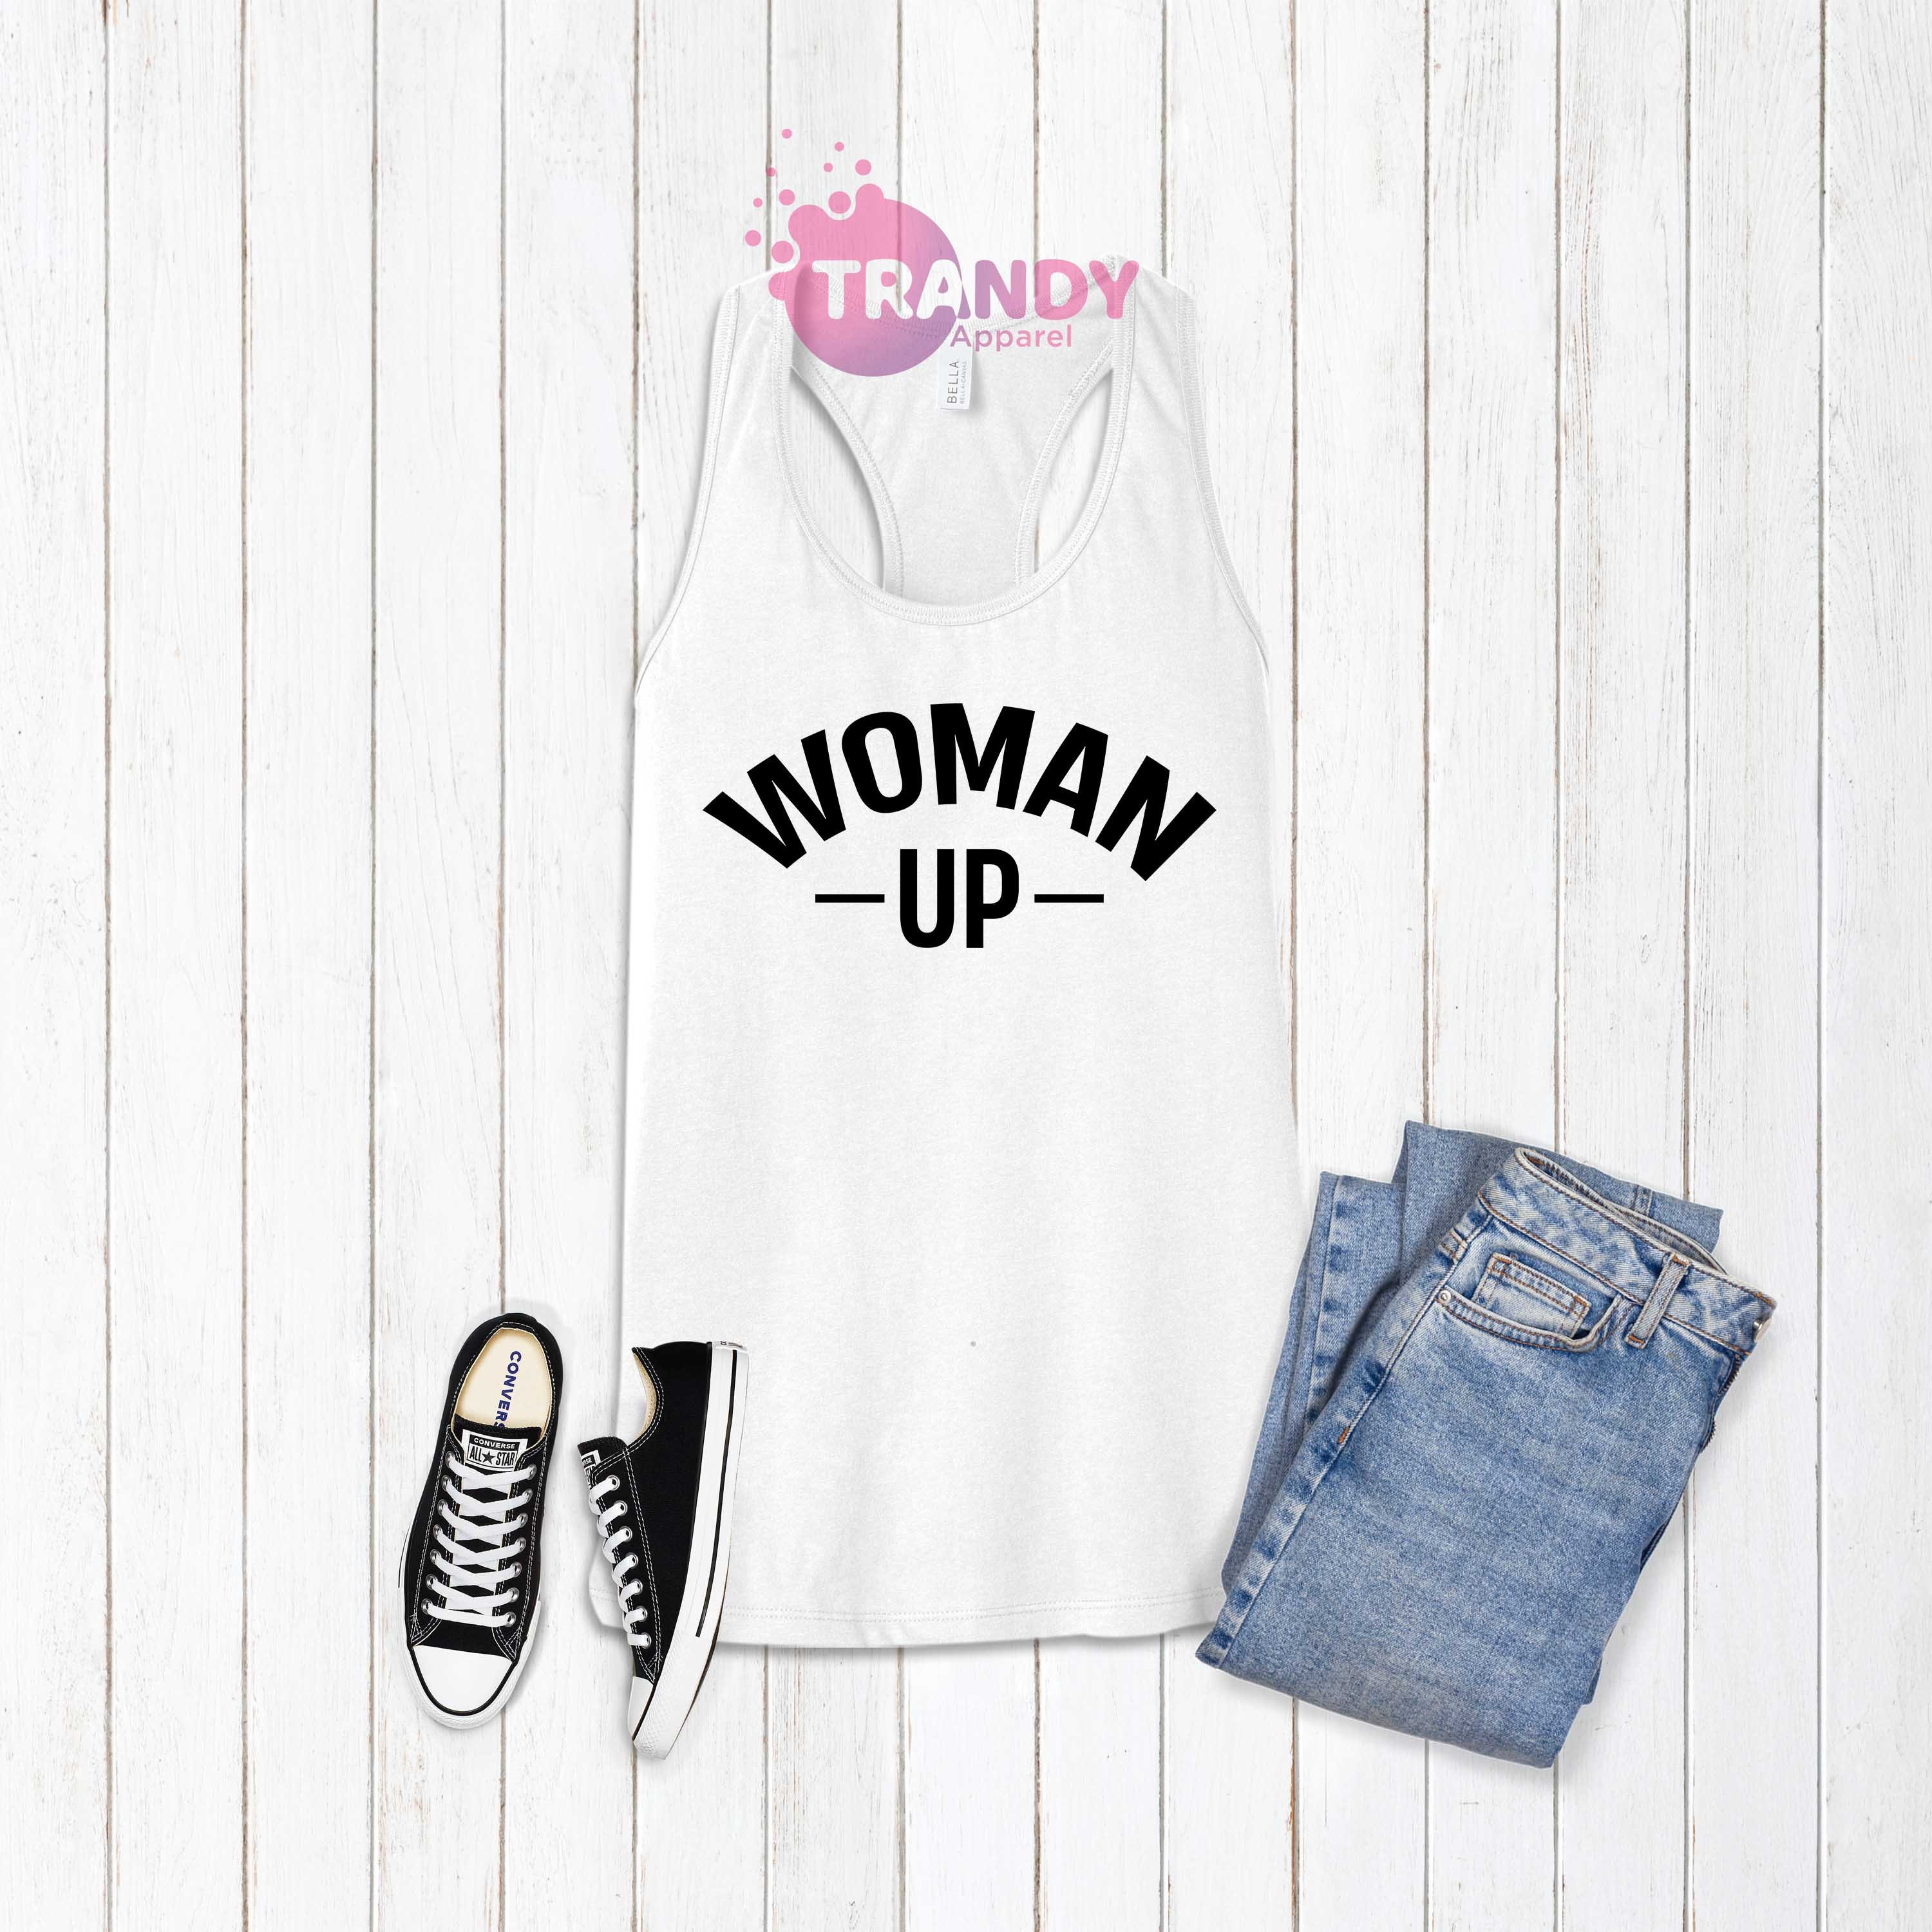 Discover Woman Up T-shirt, Women Empowerment, Motivational Shirt, Inspirational Shirt, Feminist T-shirt, Women's Day Gift, Women's Support Shirt